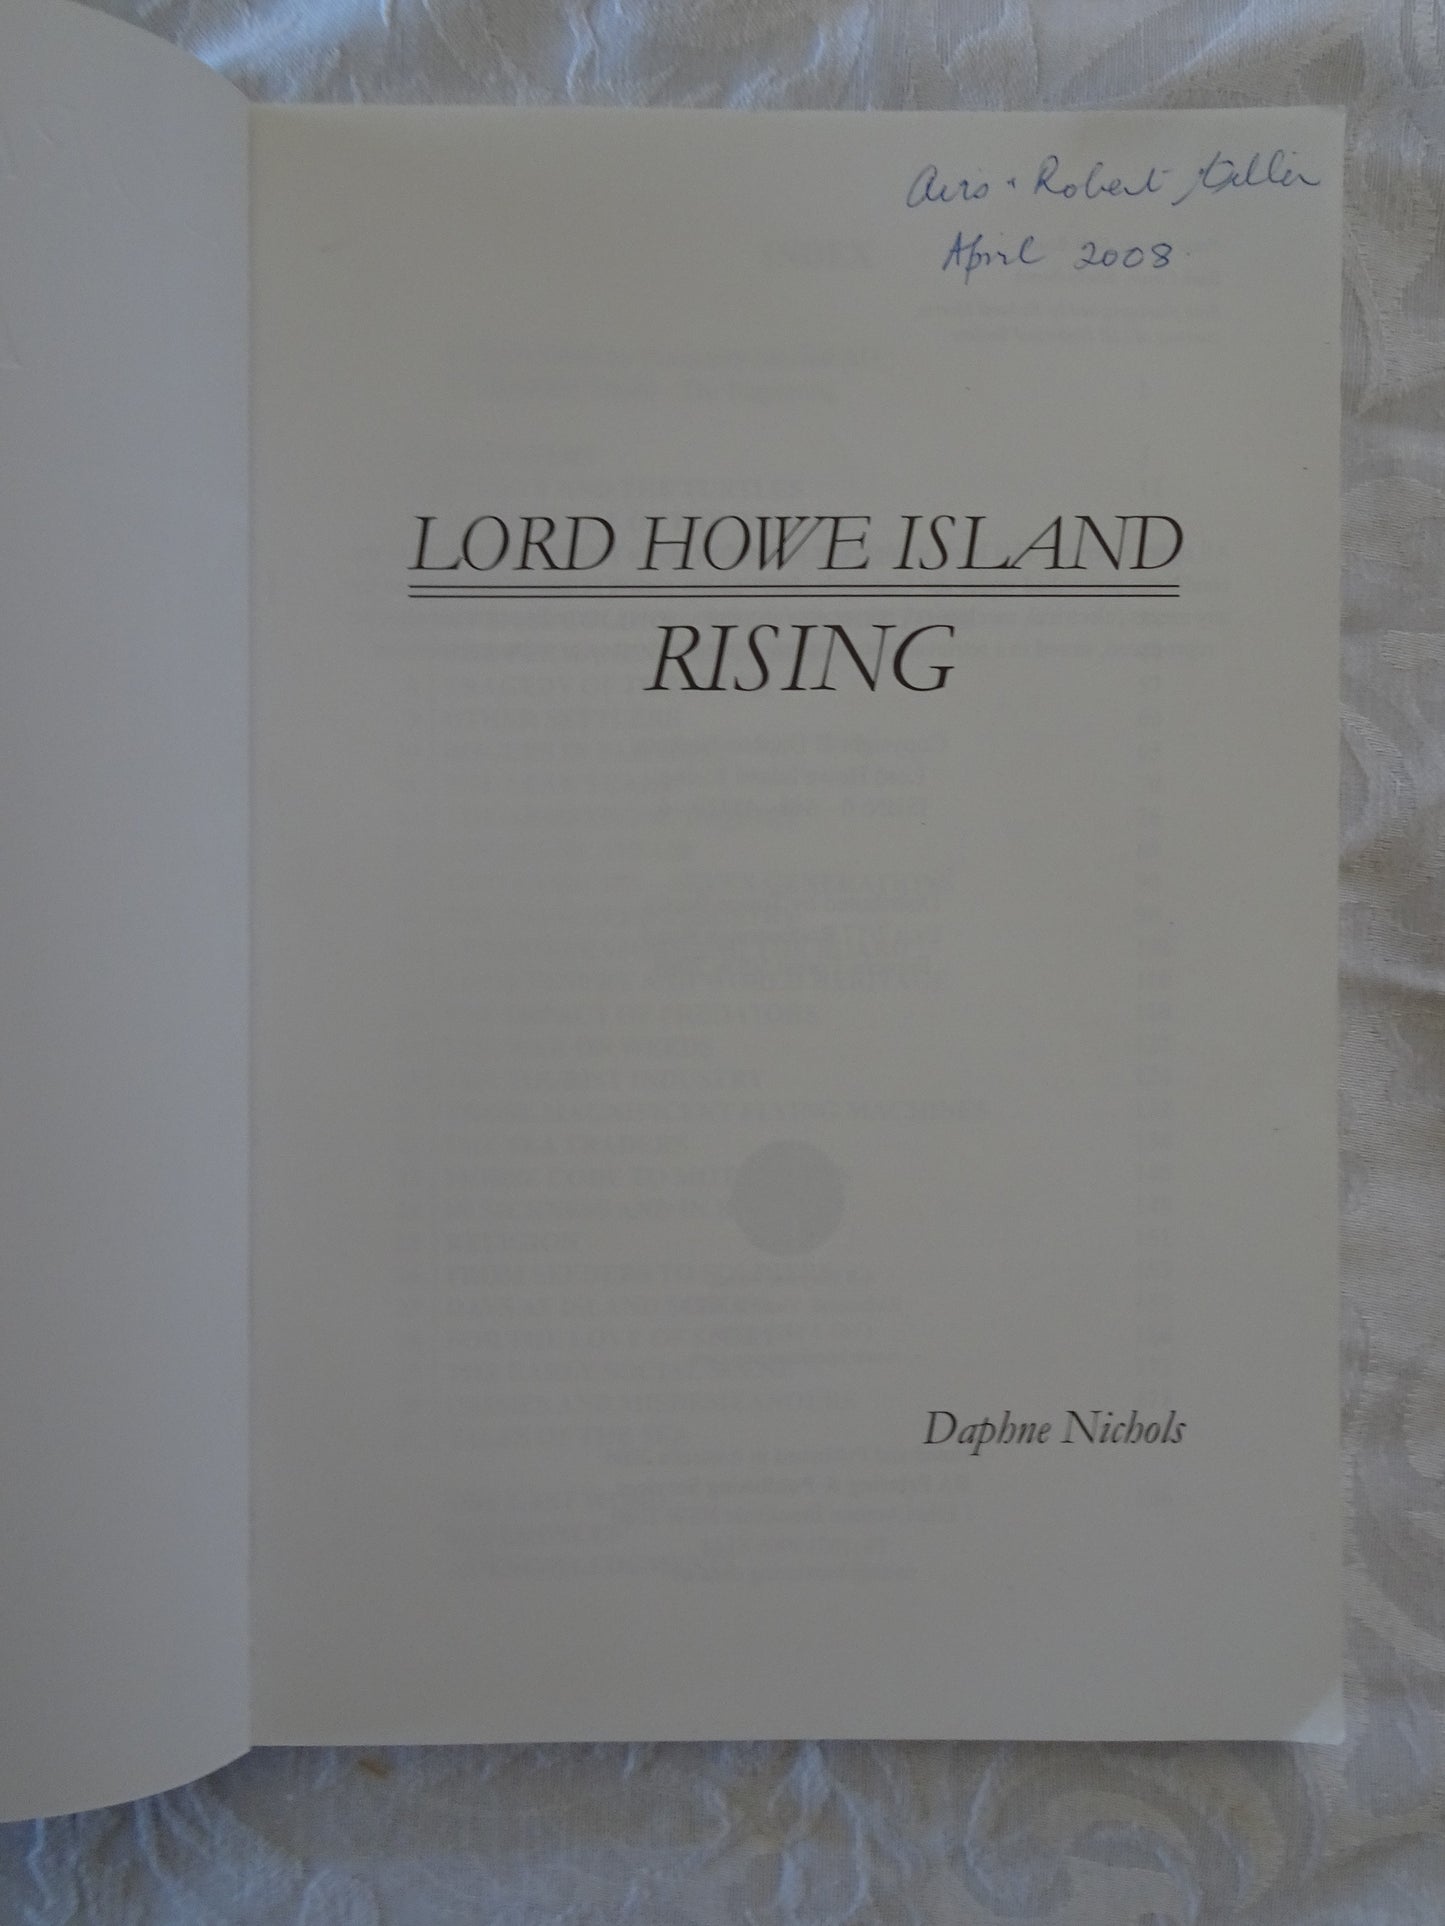 Lord Howe Island Rising by Daphne Nichols